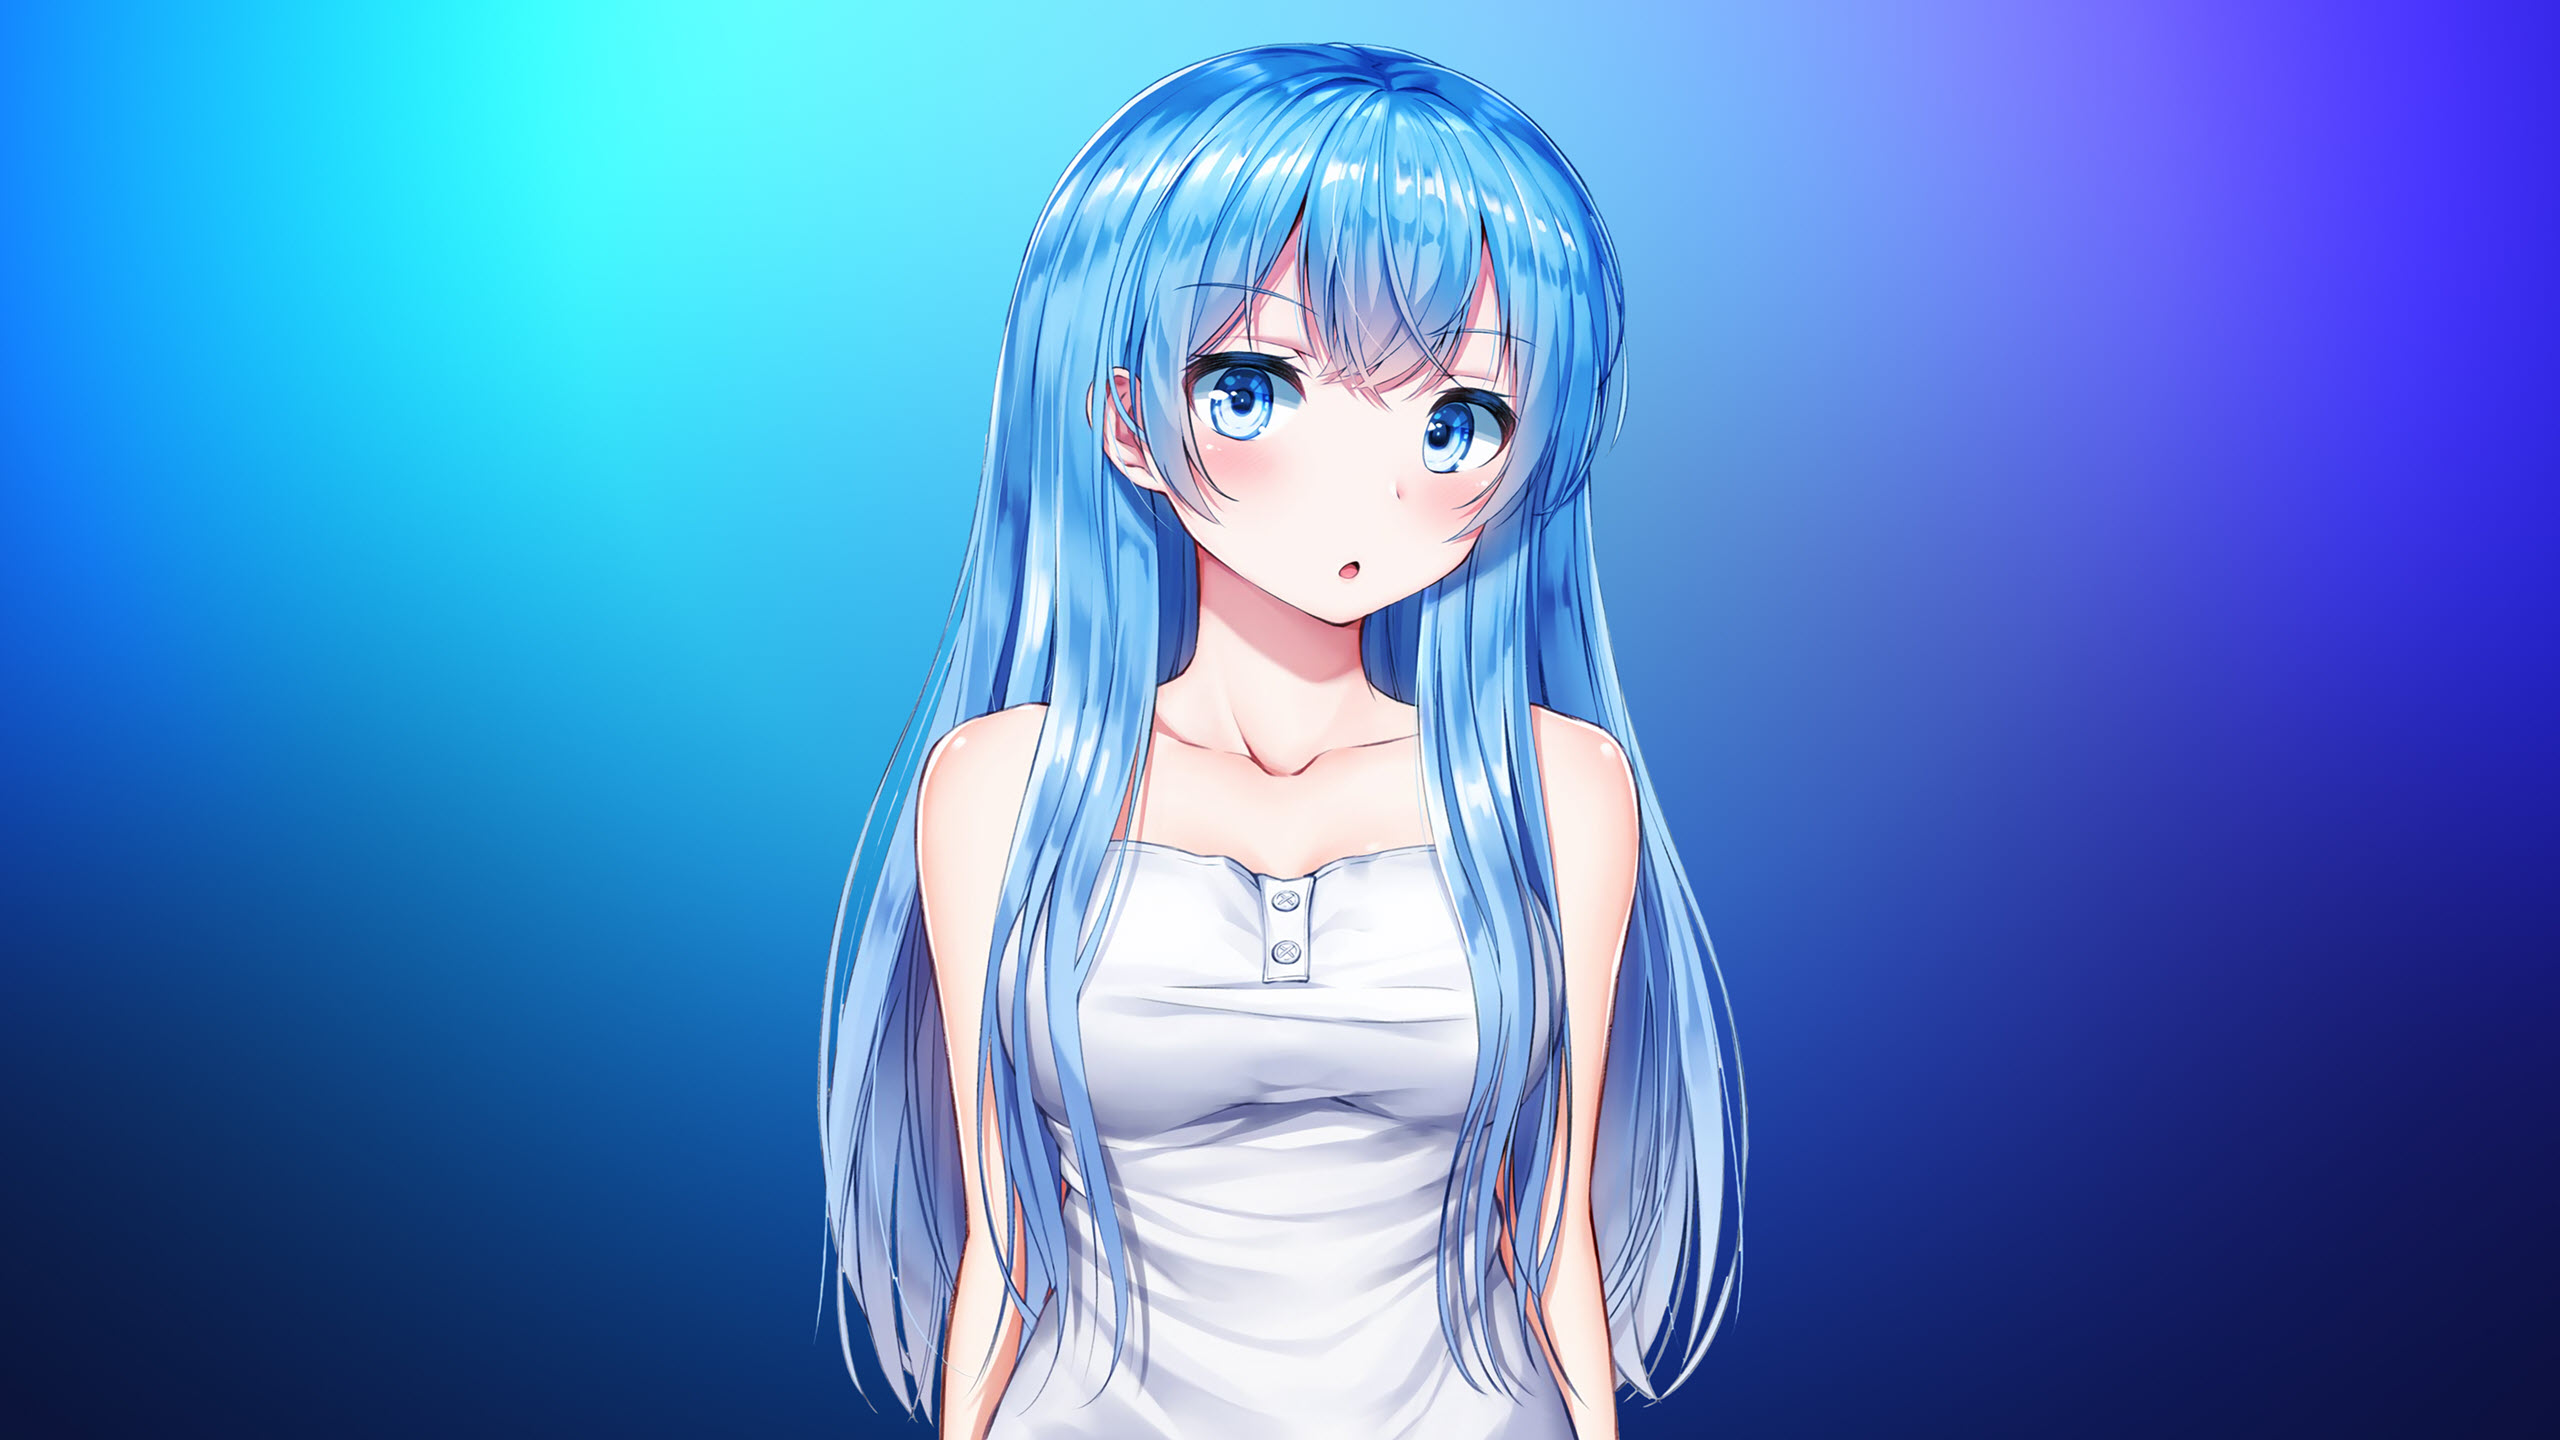 Hình nền anime girl màu xanh dễ thương